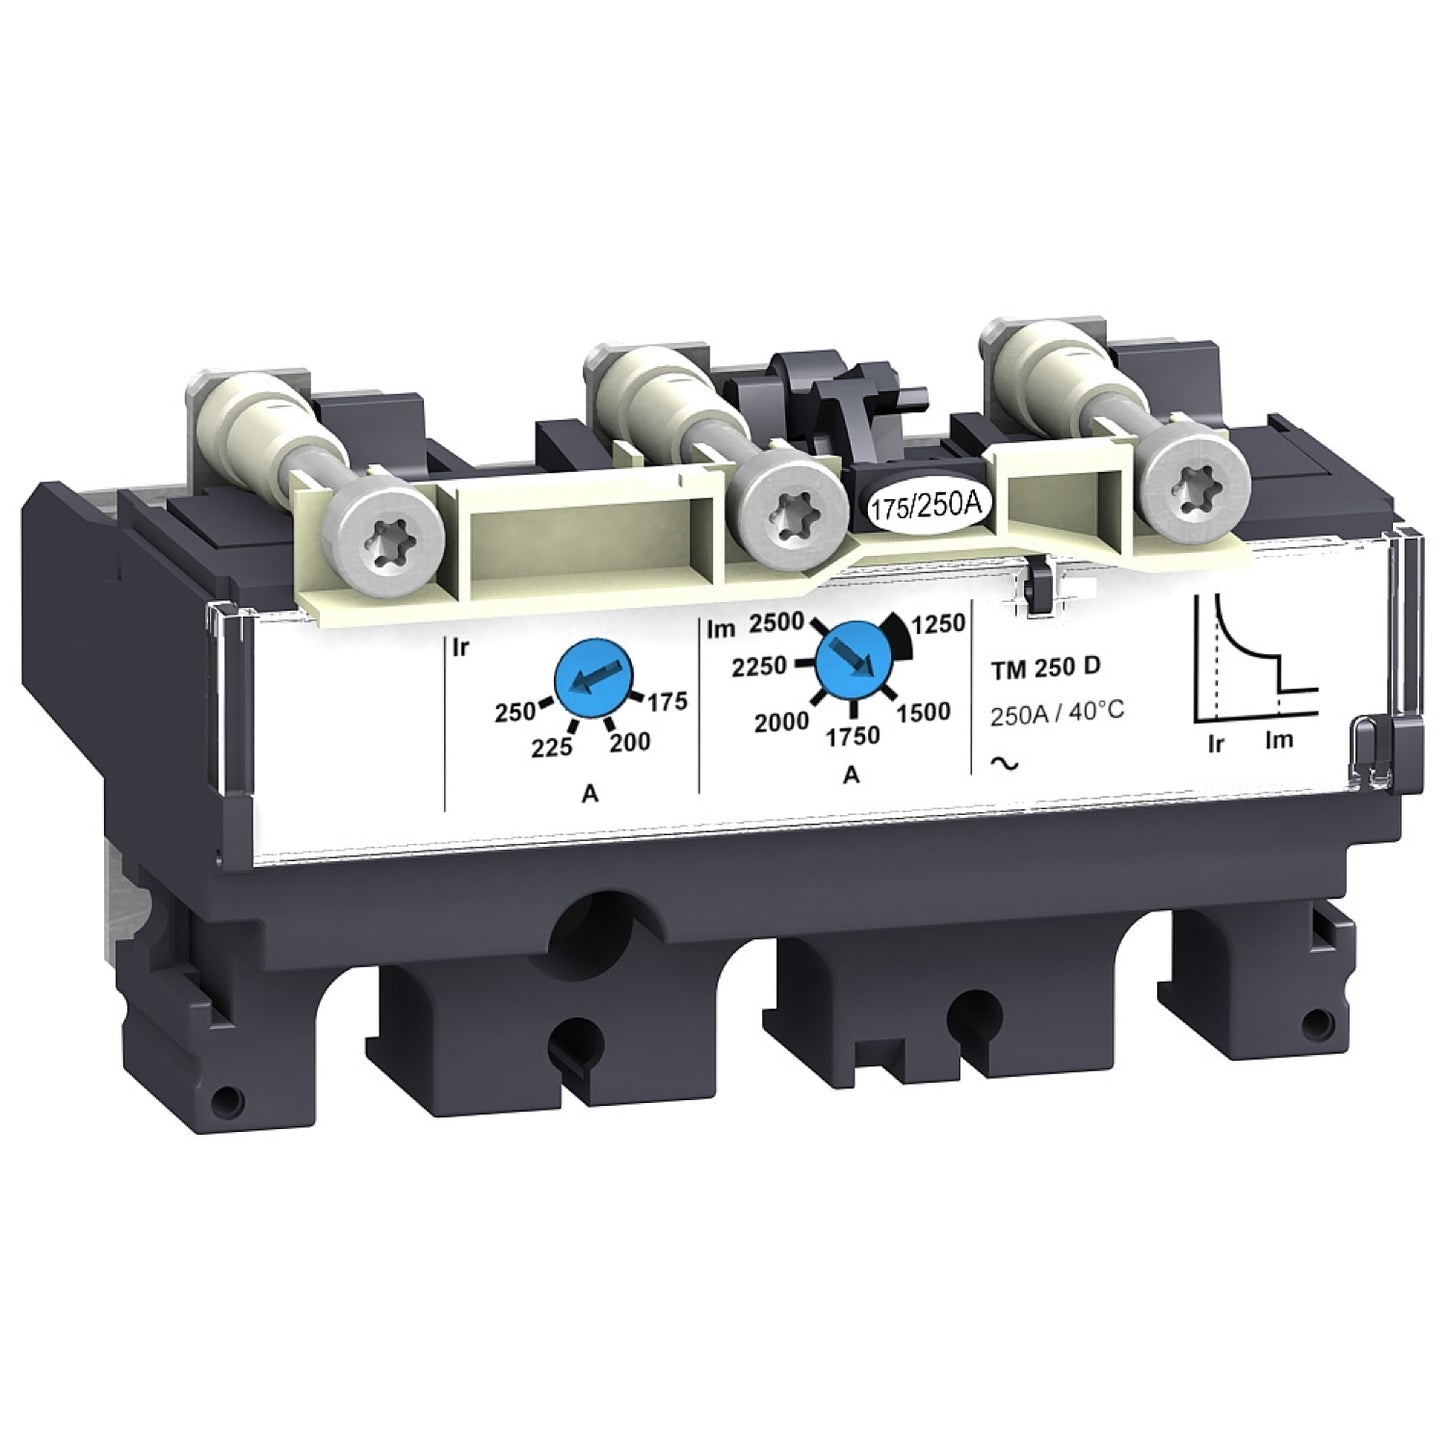 LV429033 Trip unit TM50D for NSX100/160 circuit breakers